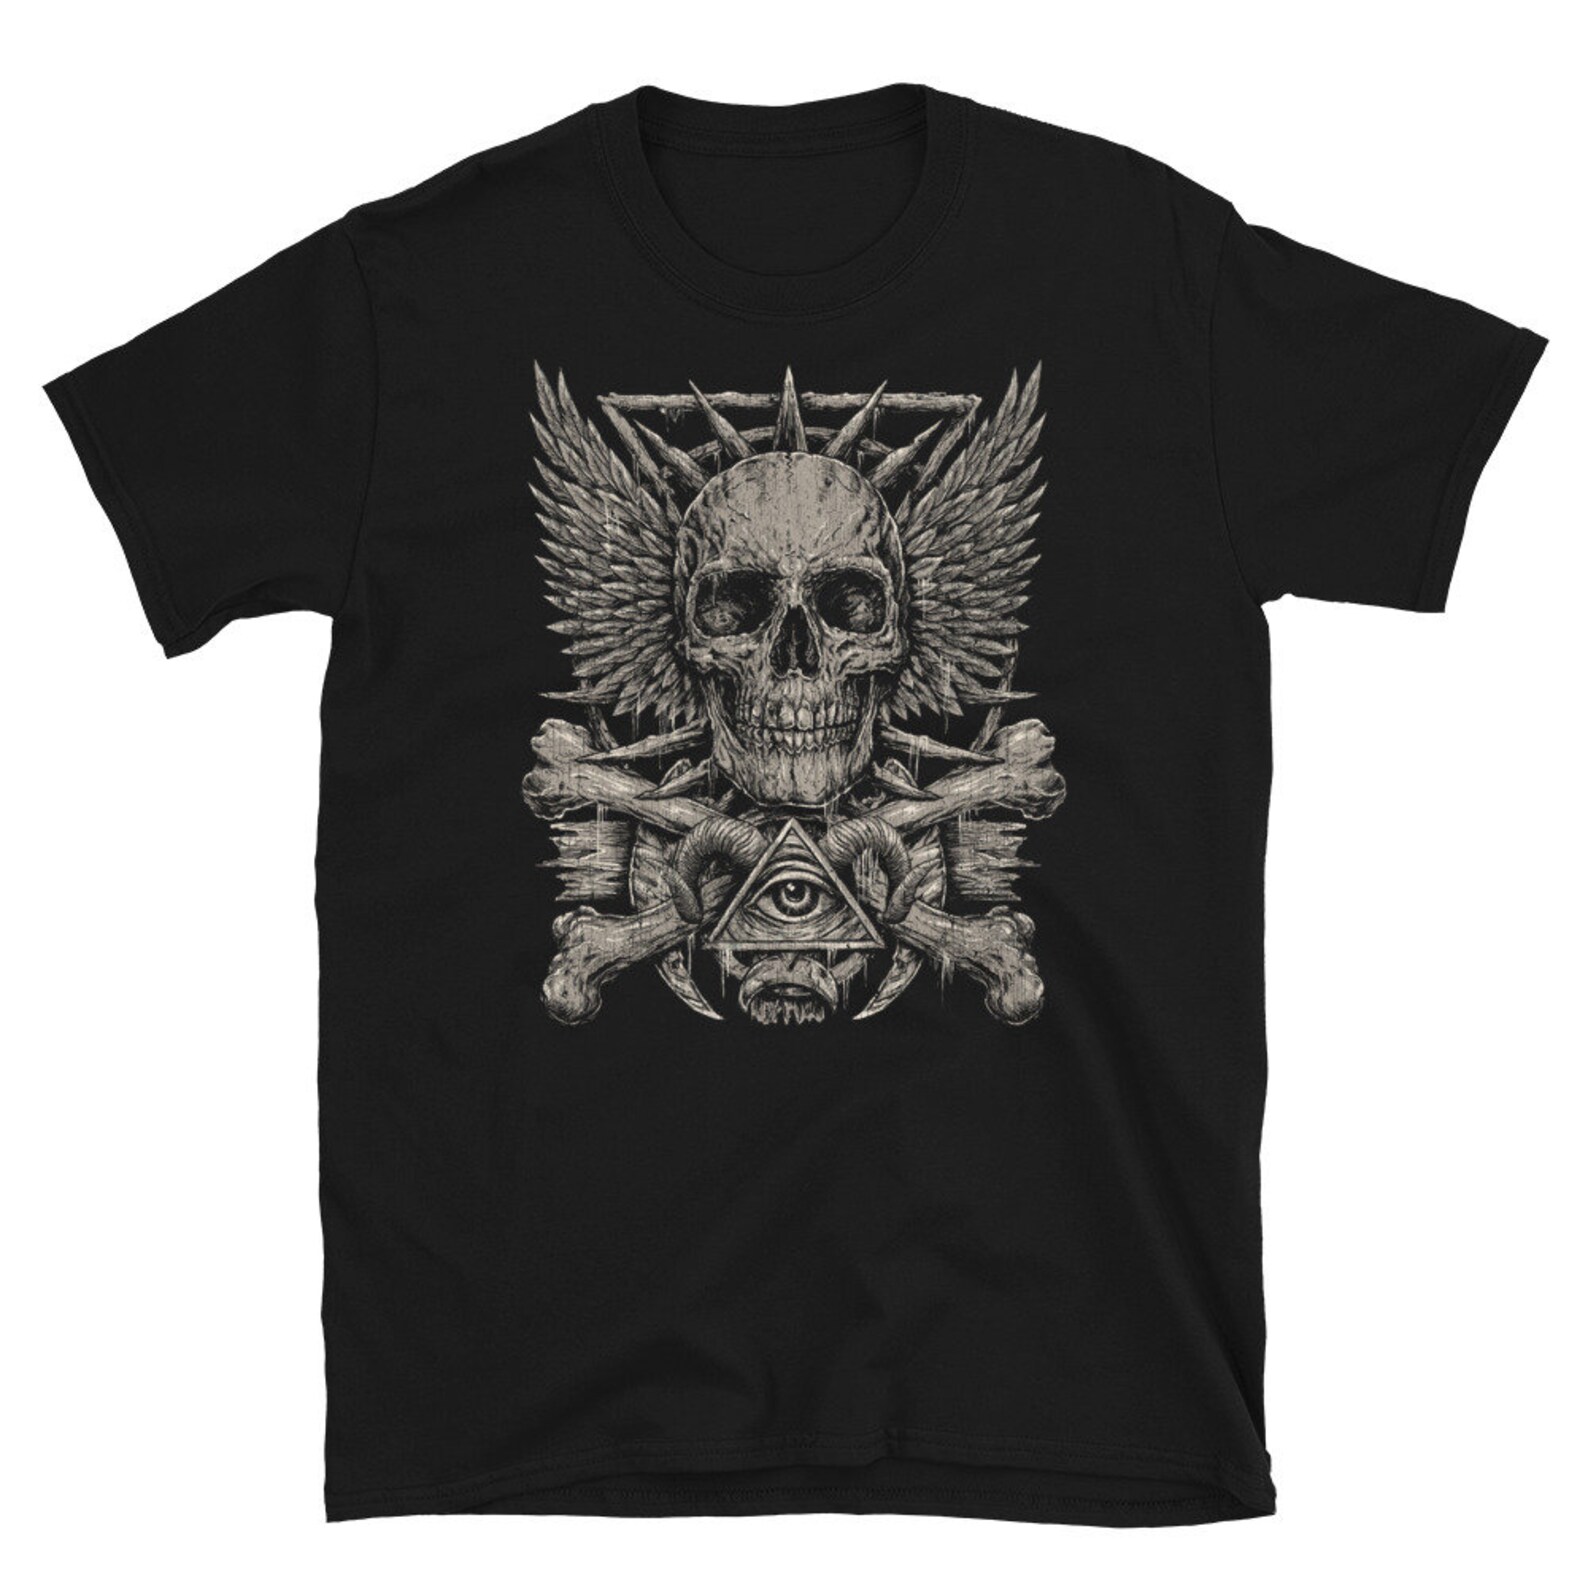 Skull & Thorns T-shirt Goth Gothic Alternative Style - Etsy